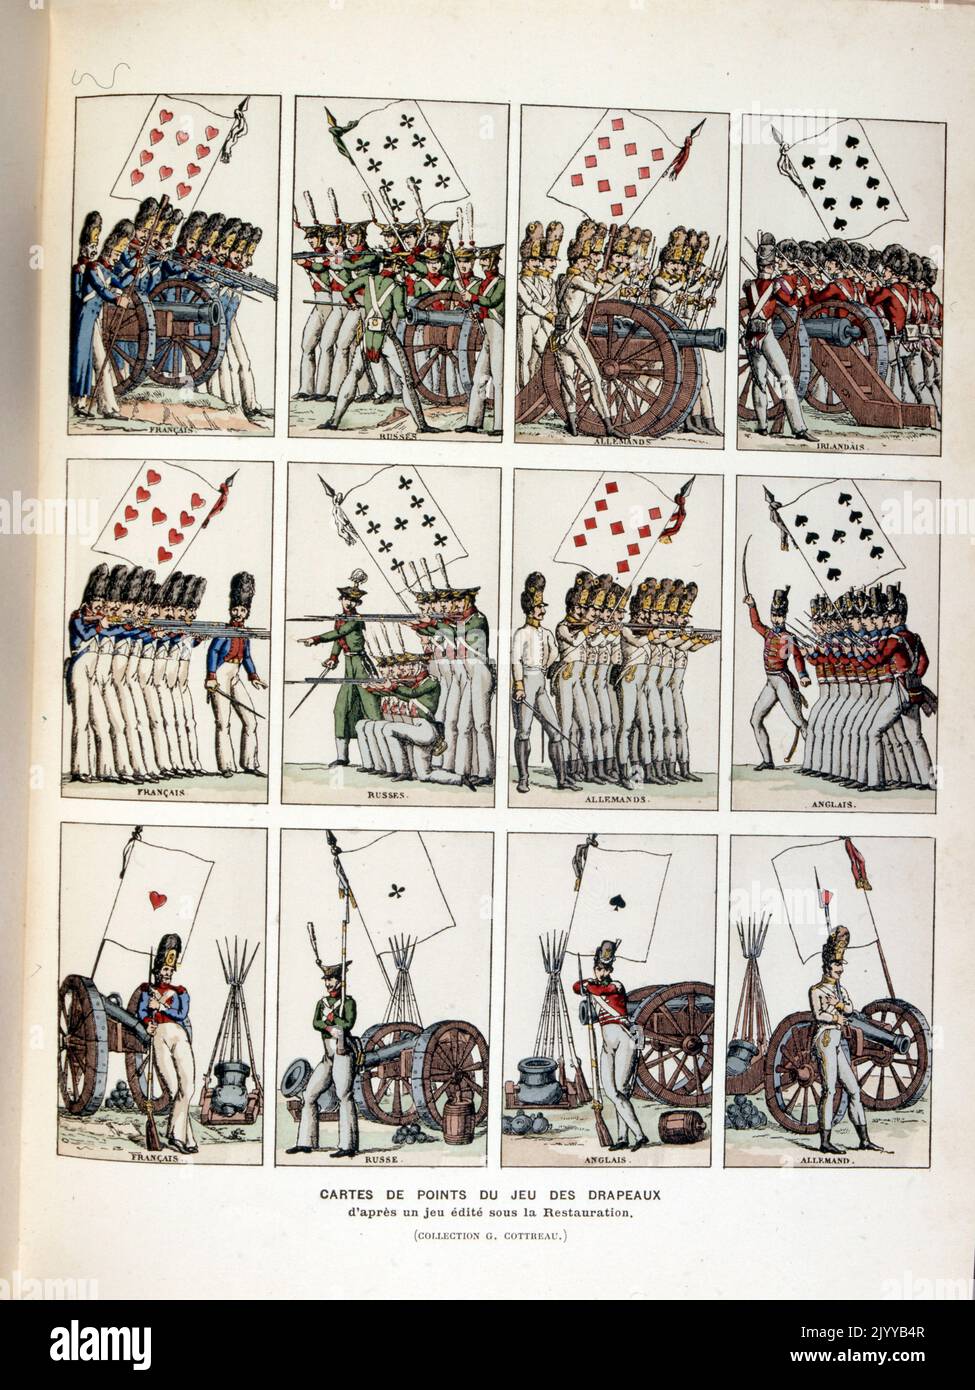 Farbige Abbildung von Spielkarten mit Figuren aus dem Spiel Drapeaux. Stockfoto